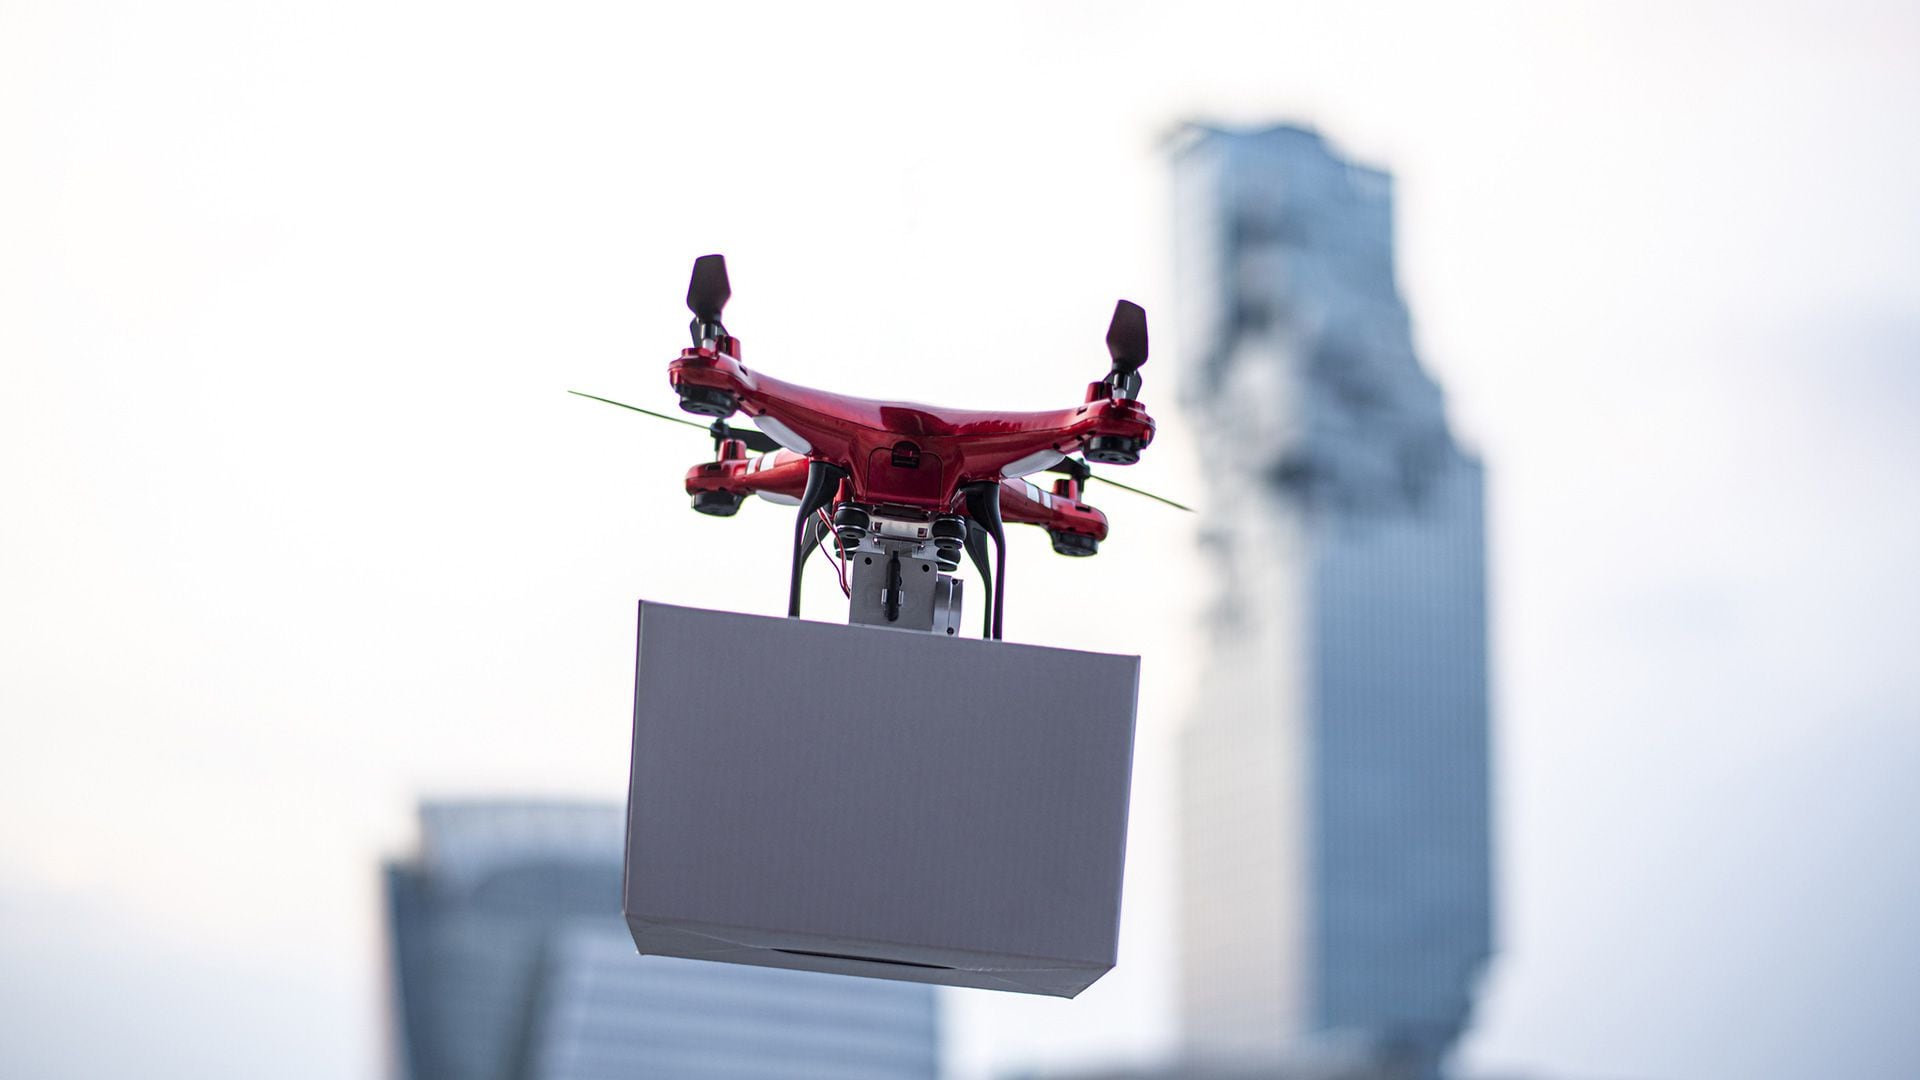 Foto: Inician fase de distribución "Drones delivery" en Estados Unidos / Cortesía